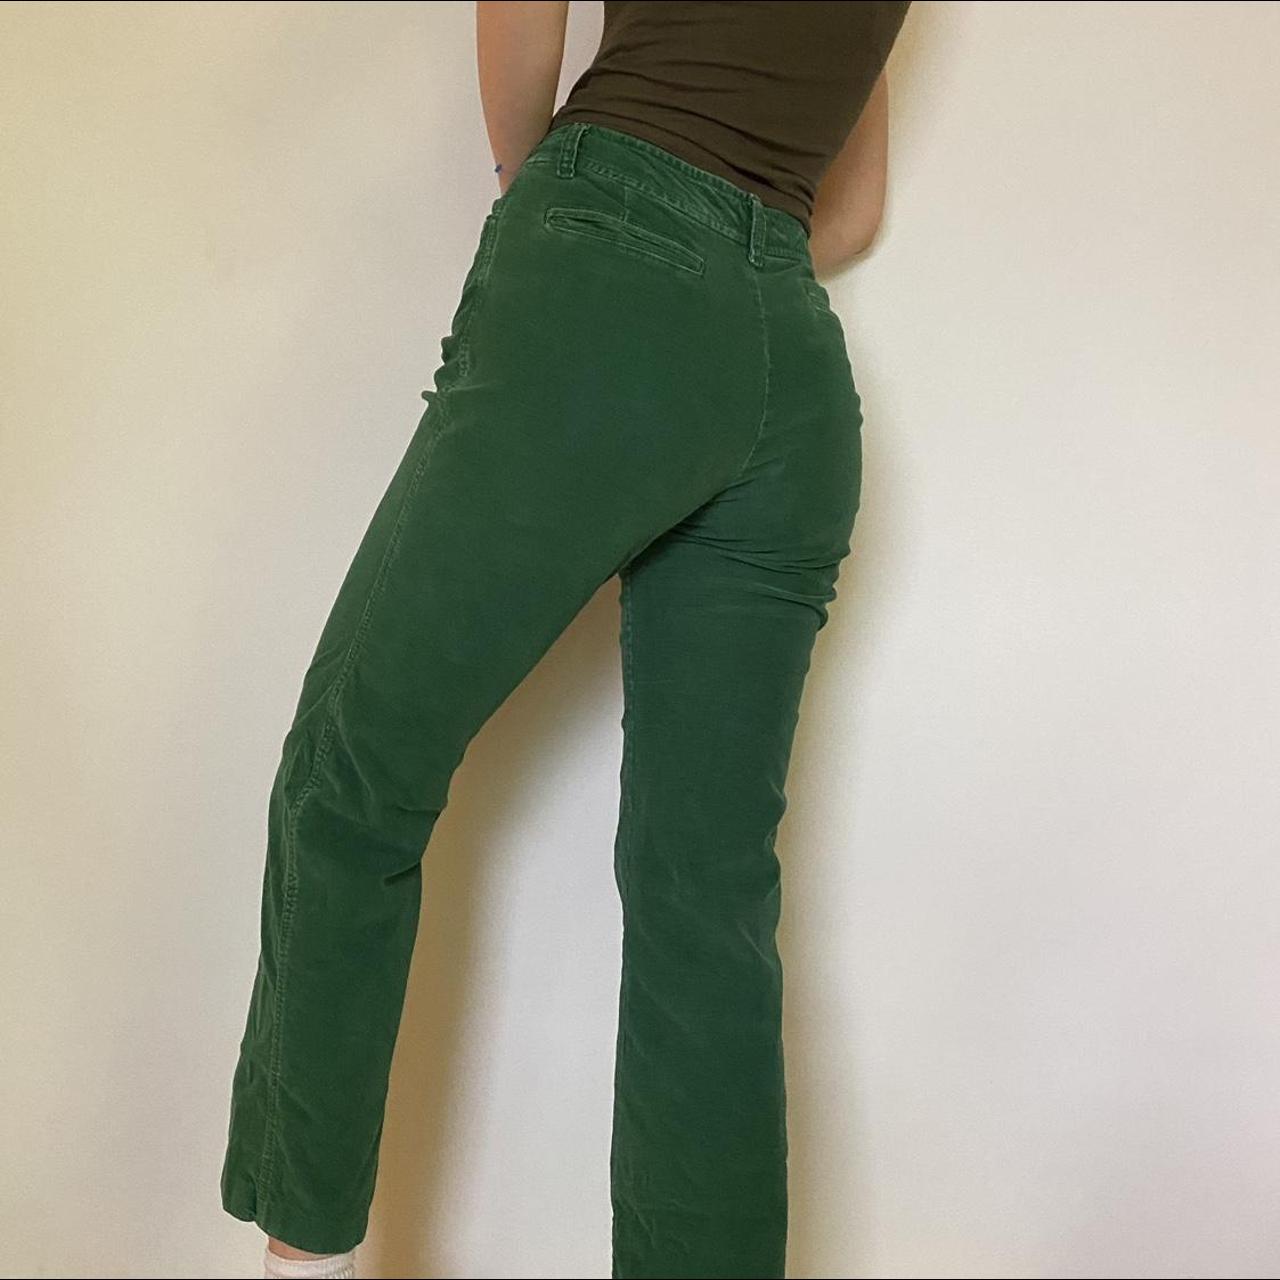 Corduroy green pants. – kath-a-porter